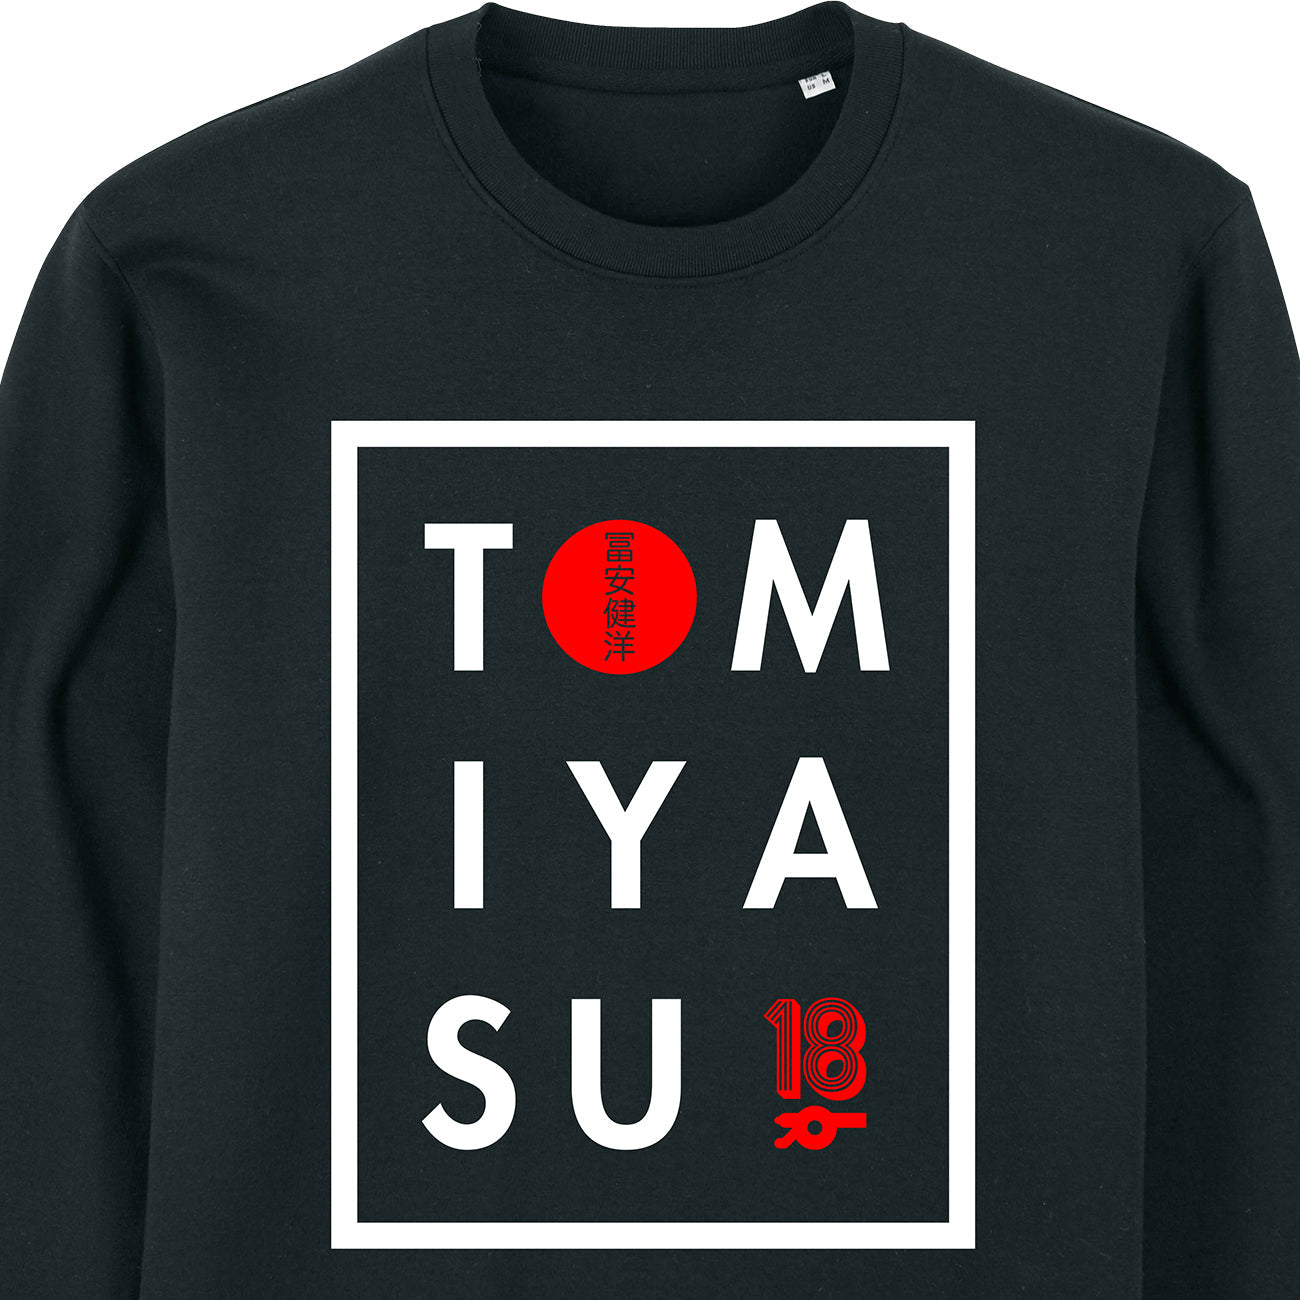 TOM-IYA-SU Sweatshirt